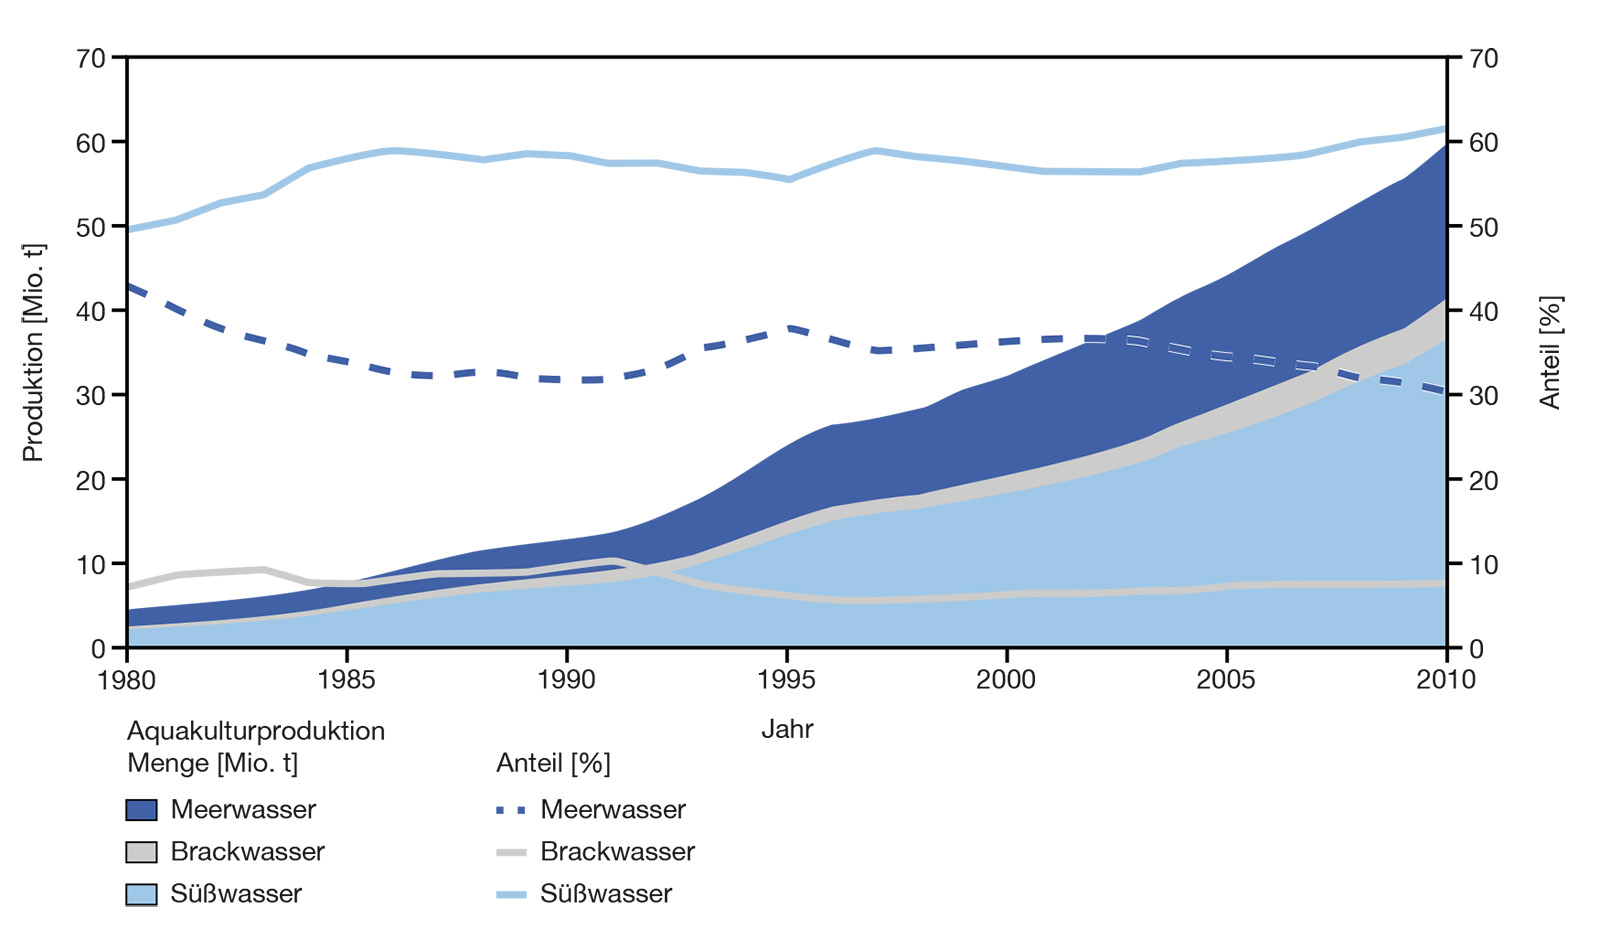 Aquakulturproduktion 1980 bis 2010 in Mio. t sowie Trends in Arten der Produktion